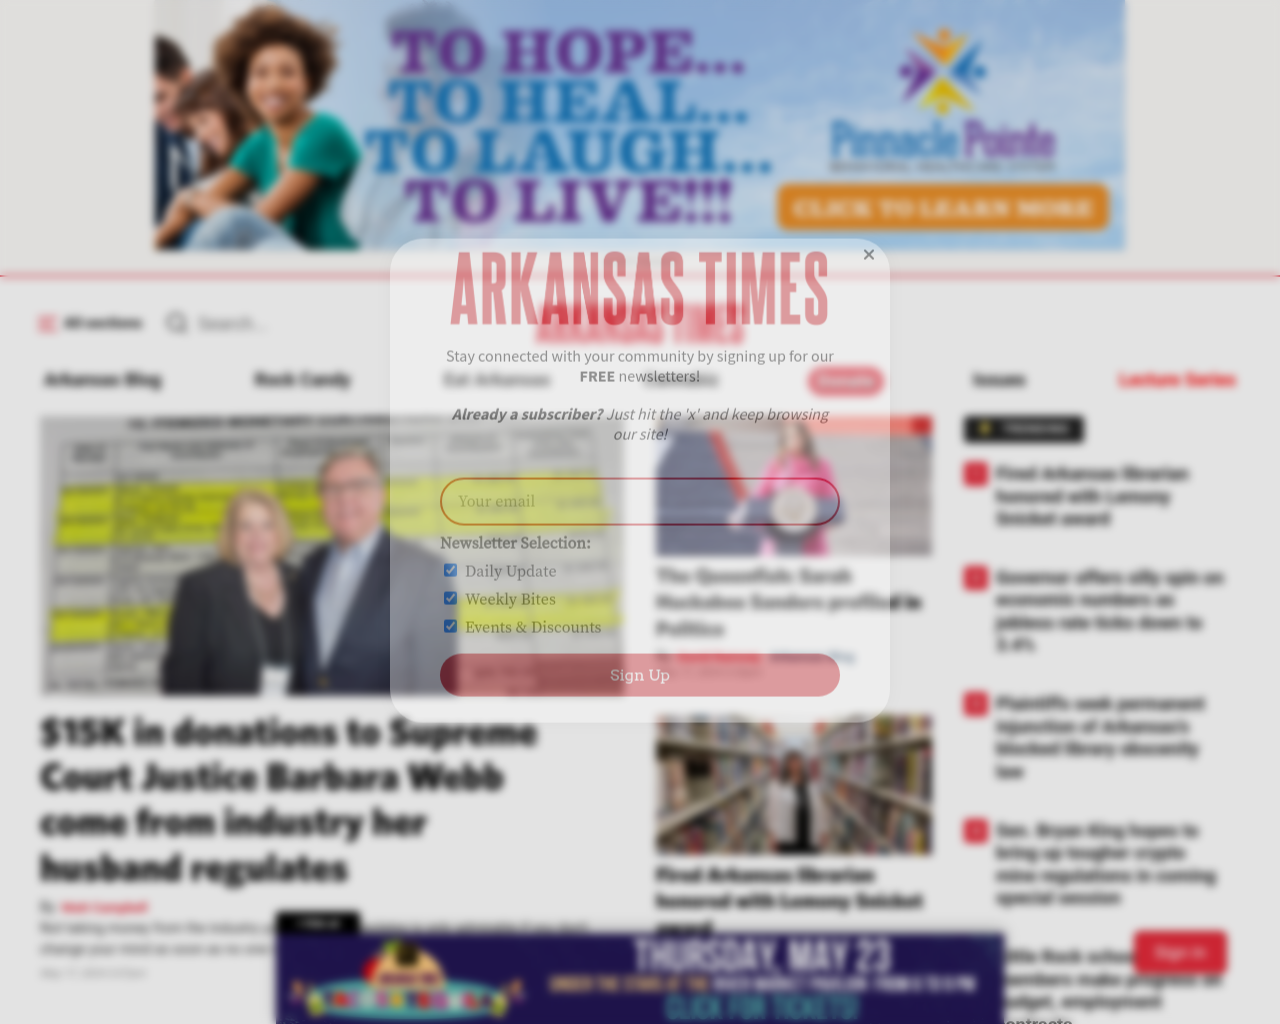 arktimes.com